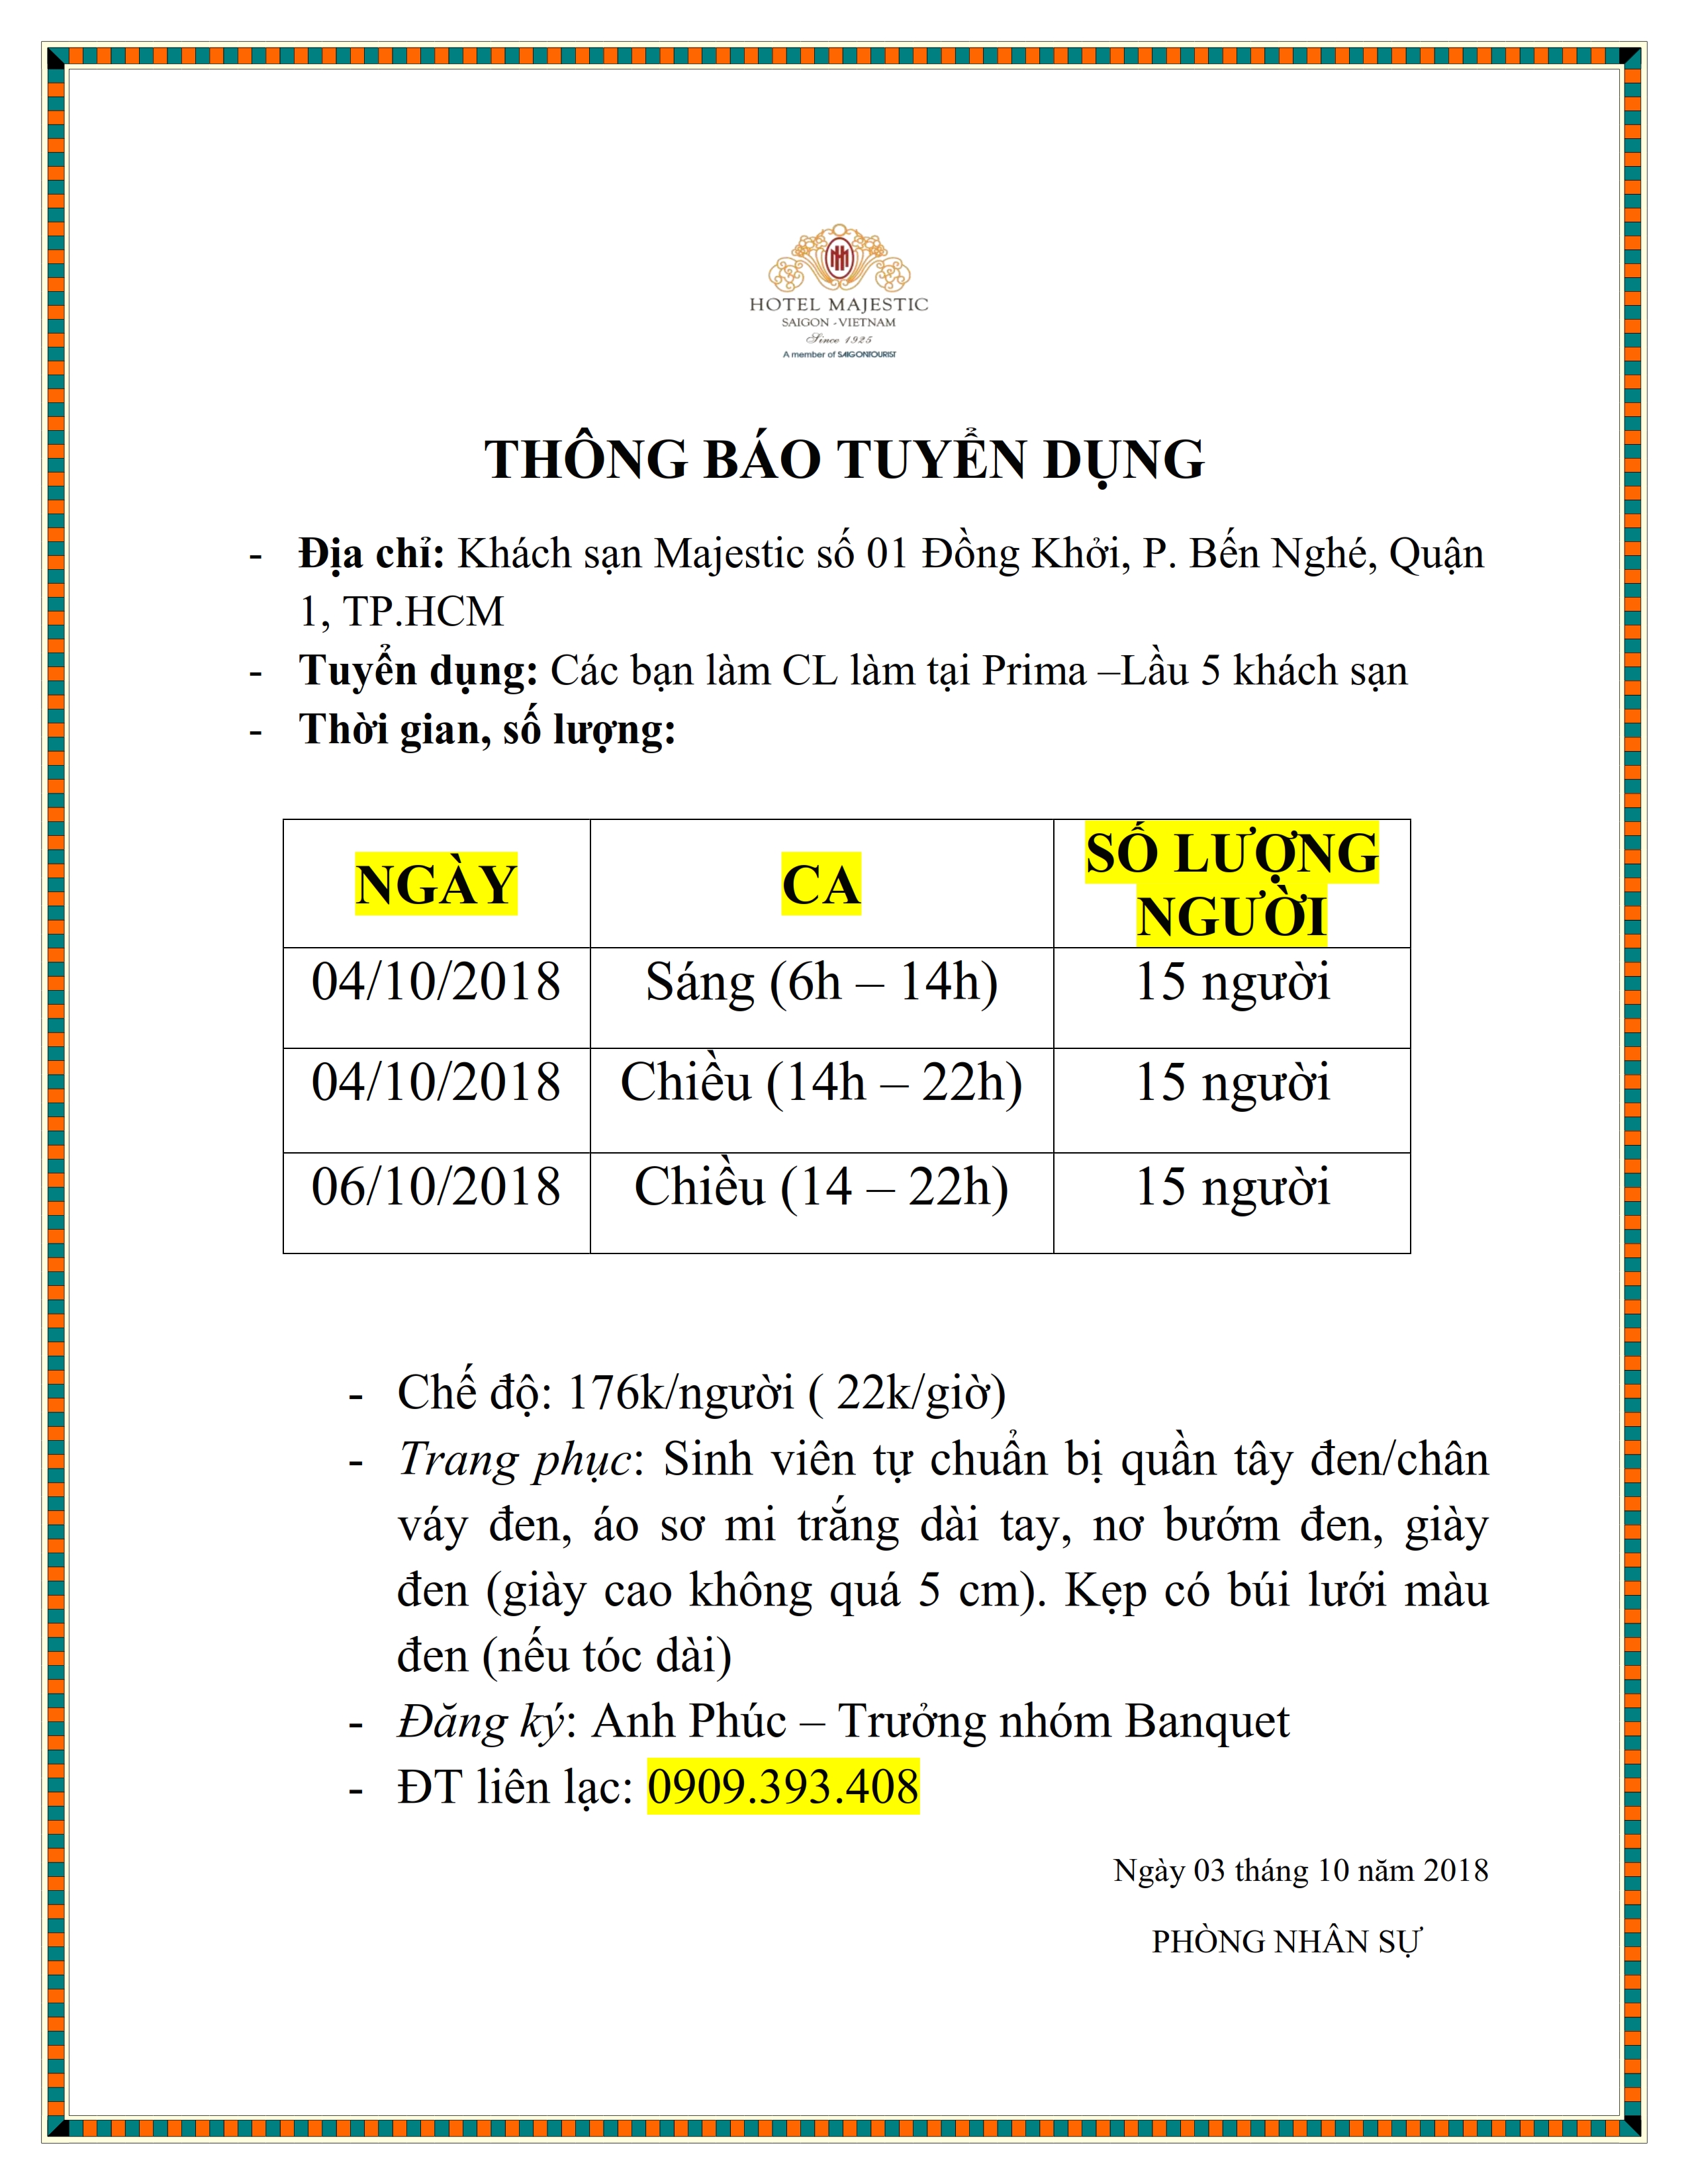 Thông báo tuyển dụng của Khách sạn Majestic Saigon (Ngày 04,06/10 ...